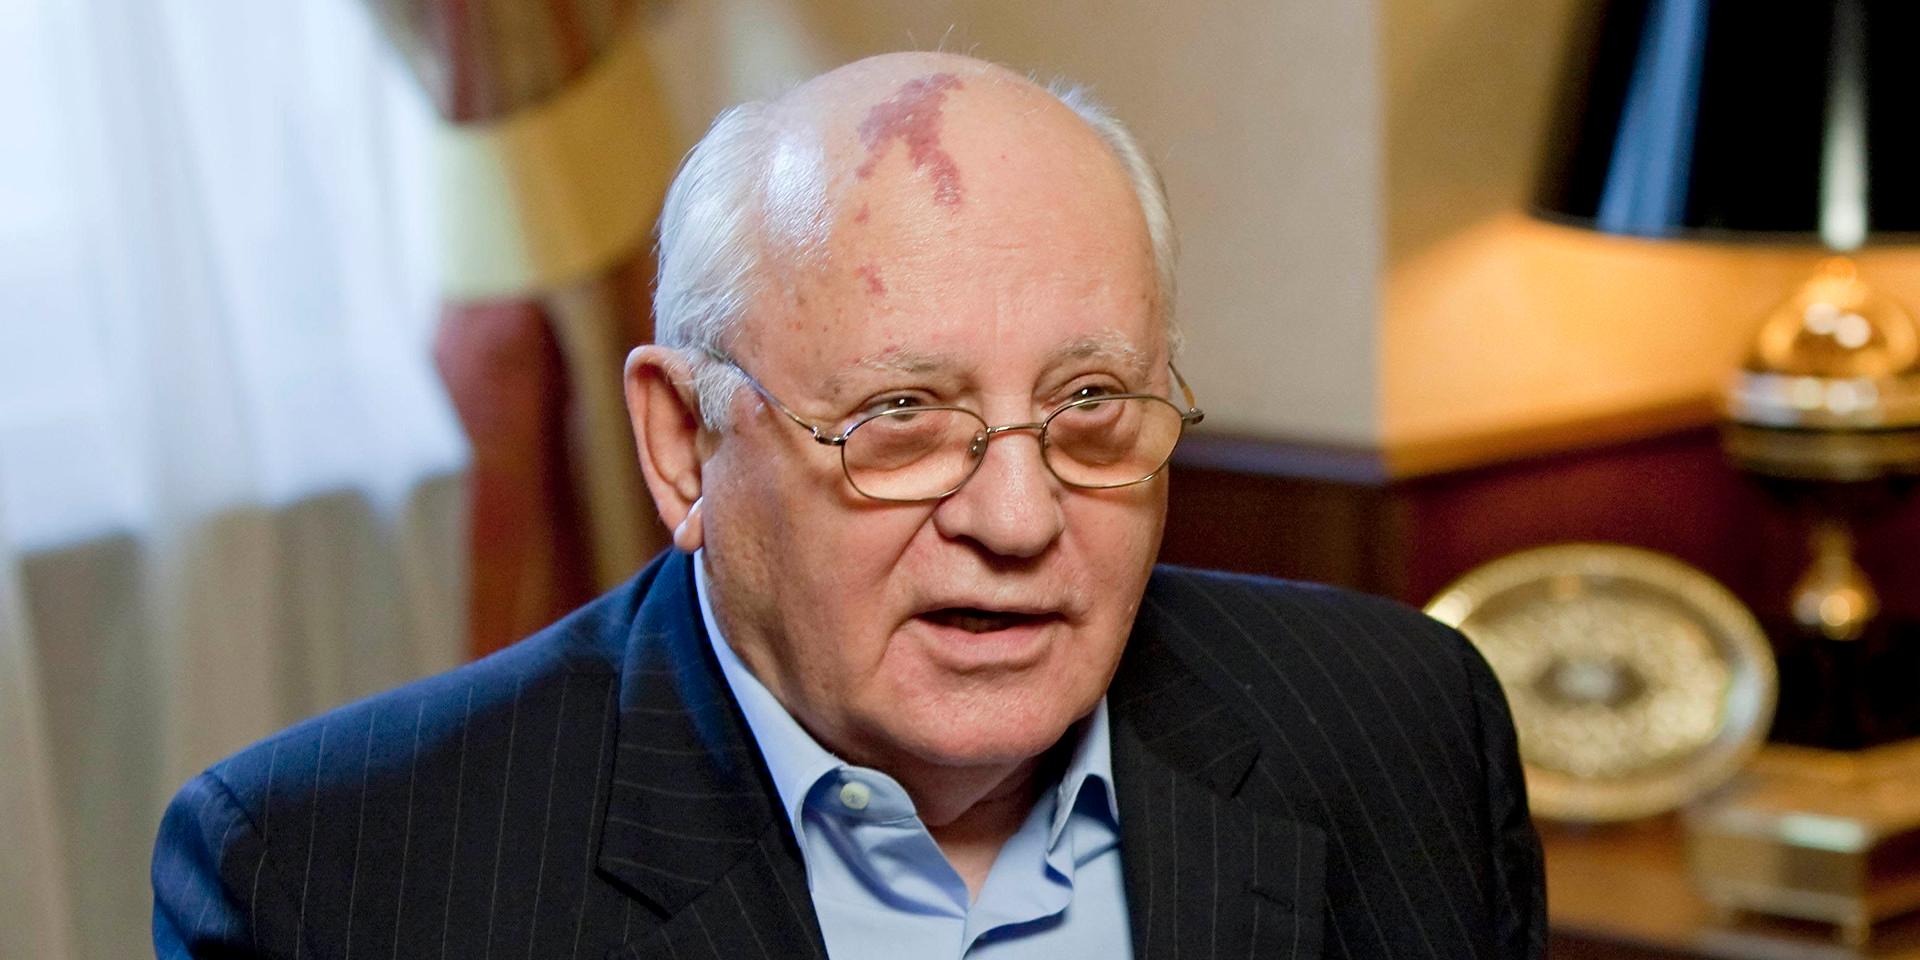 Avliden. Michail Gorbatjov, tidigare ledare för Sovjetunionen, dog under tisdagen.